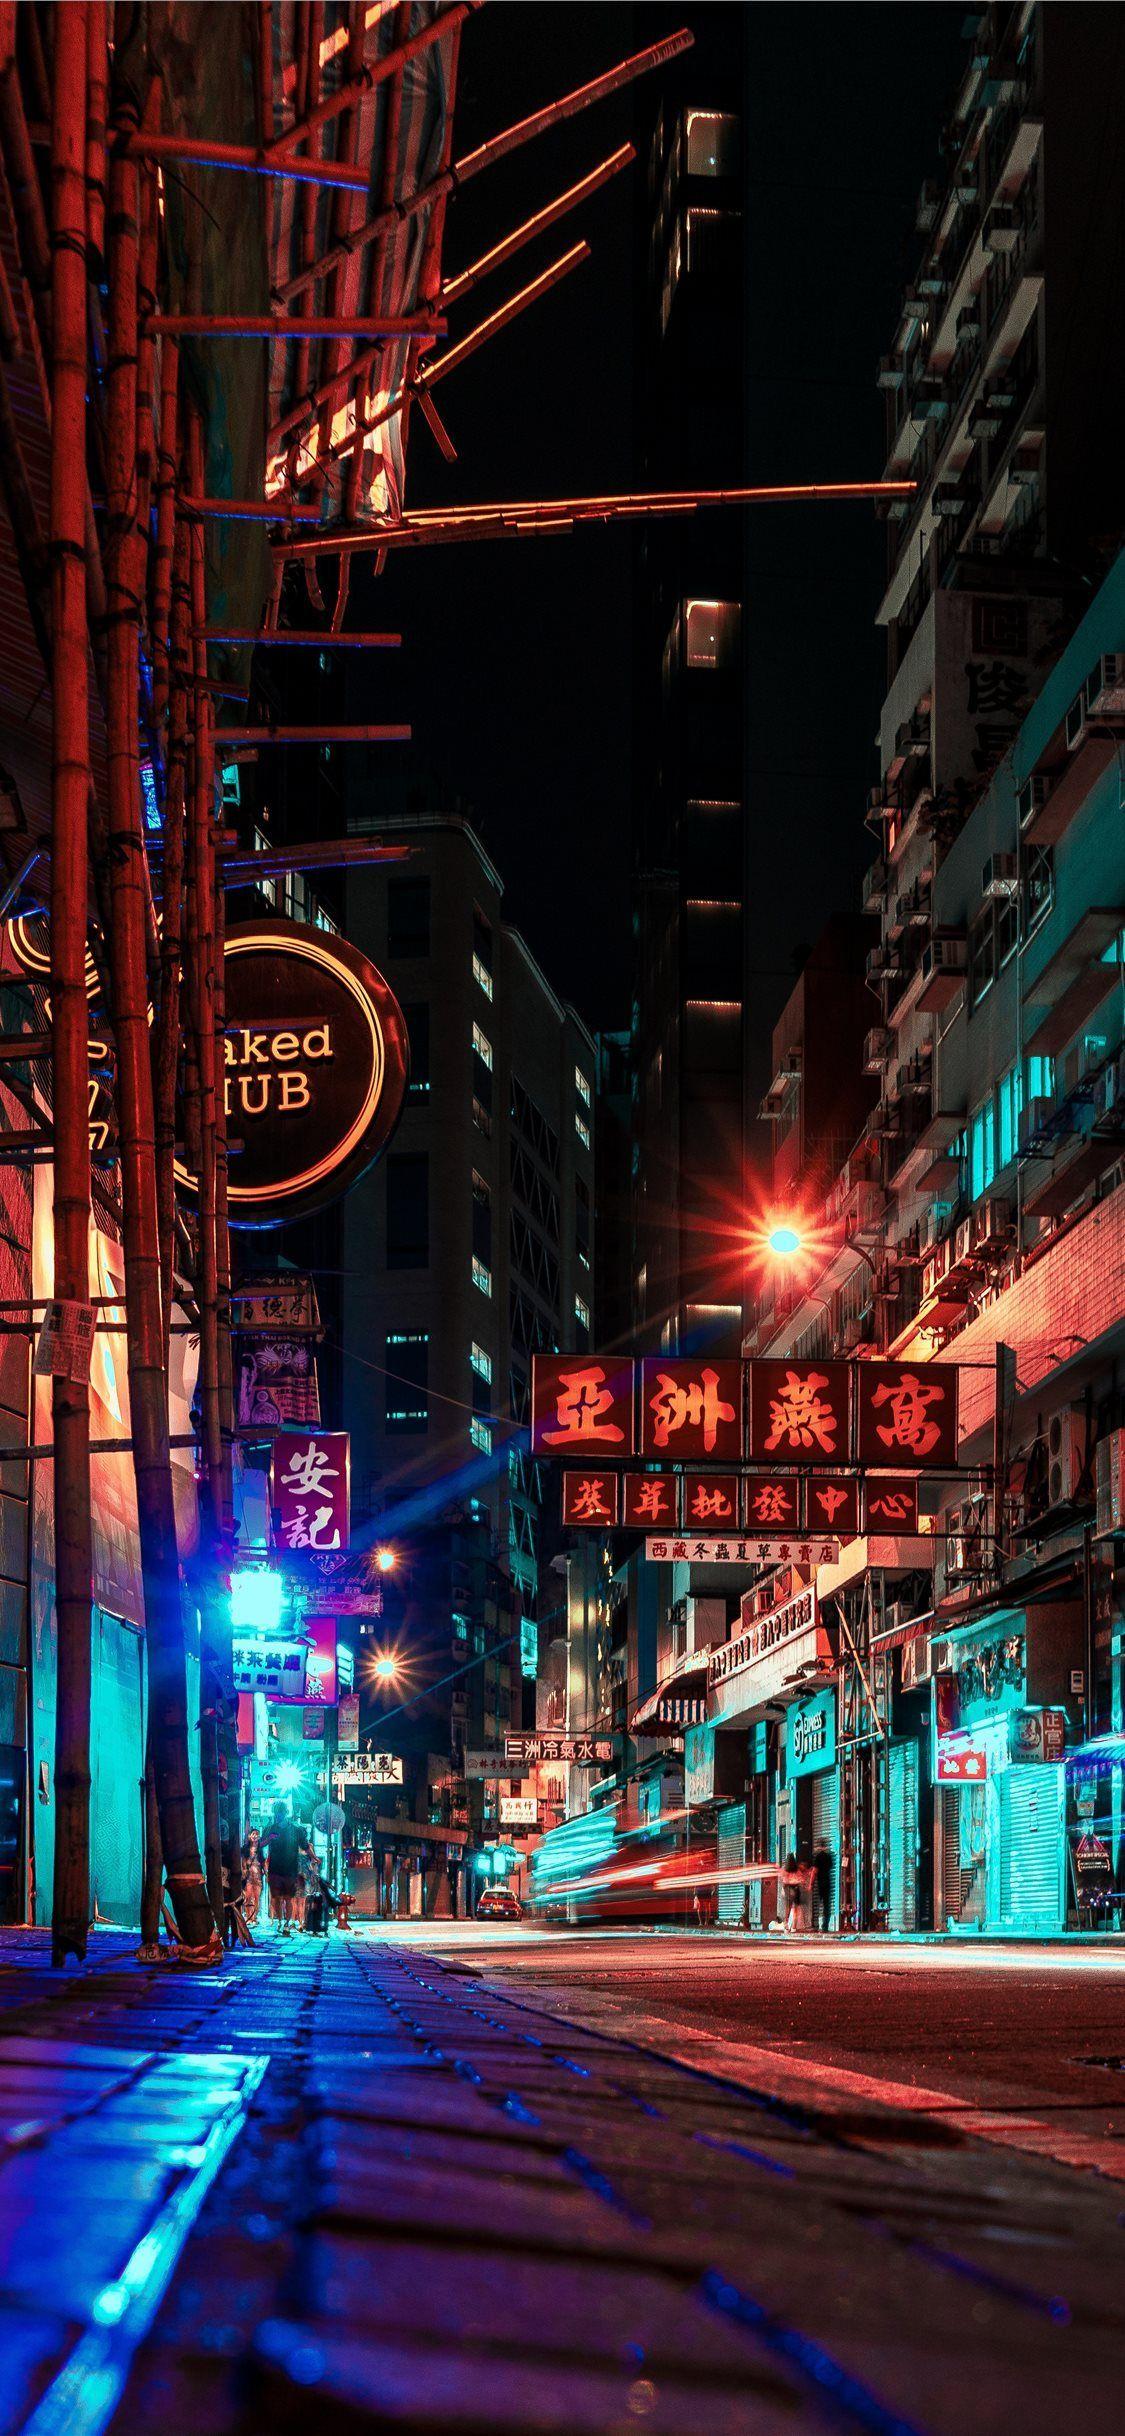 Thành phố Hong Kong là nơi đáng sống và là một thương hiệu đậm chất riêng. Hình nền Hong Kong trên iPhone sẽ khiến bạn thấy đầy giới tính, thanh bình và nhiều đặc trưng của thành phố này. Hãy trải nghiệm với bộ sưu tập hình nền iPhone Hong Kong của chúng tôi để thấy ngay sự khác biệt.